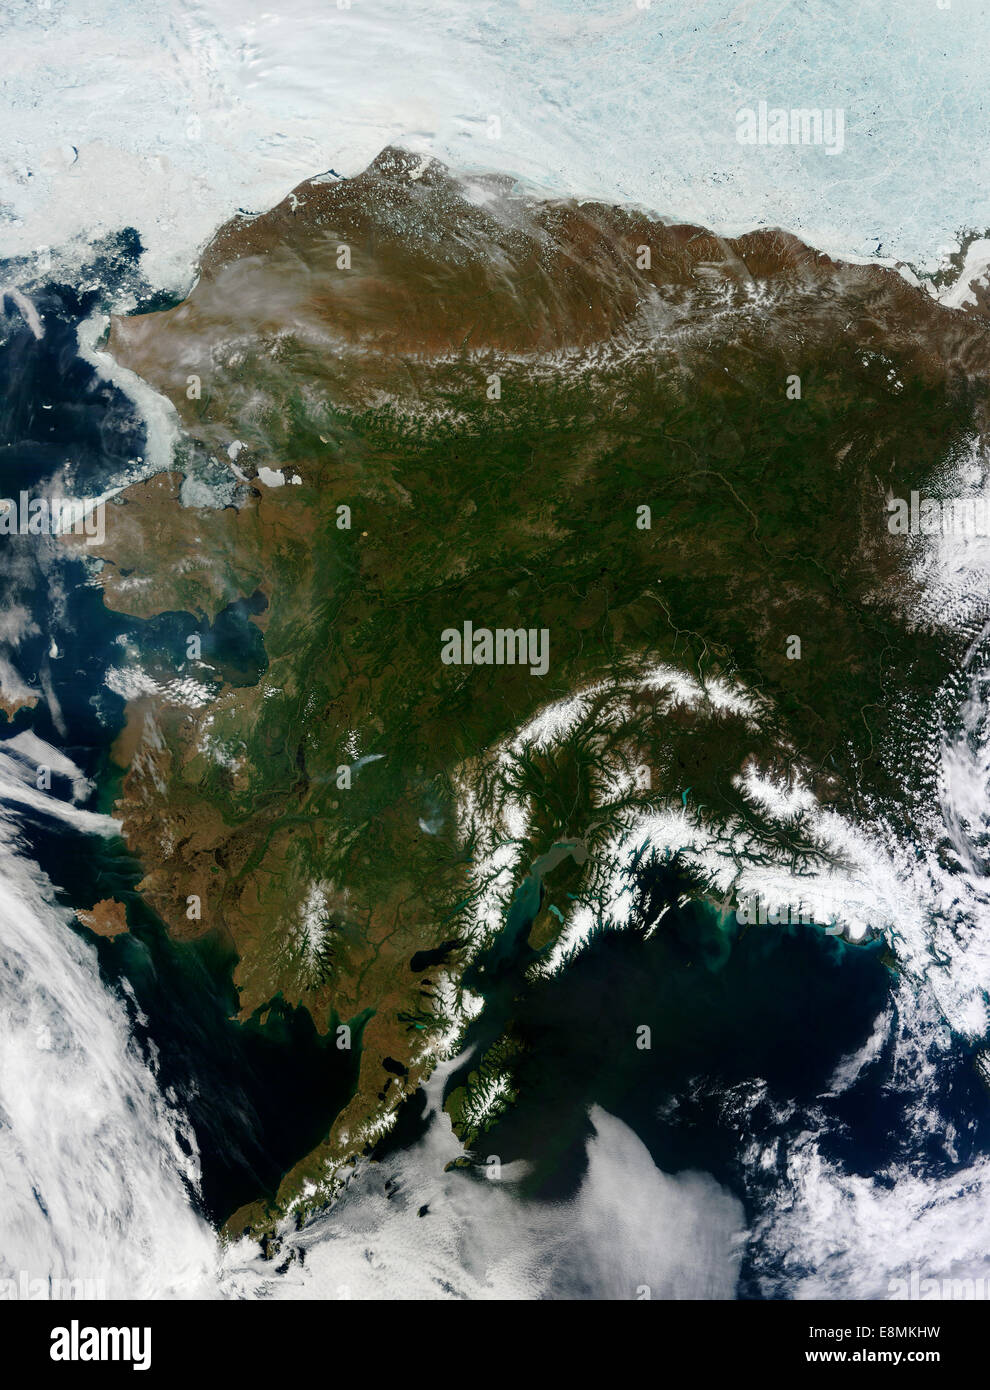 17 juin 2013 - vue d'Alaska, United States. Montagnes couvertes de neige comme l'Alaska et les montagnes Chugach, w Banque D'Images